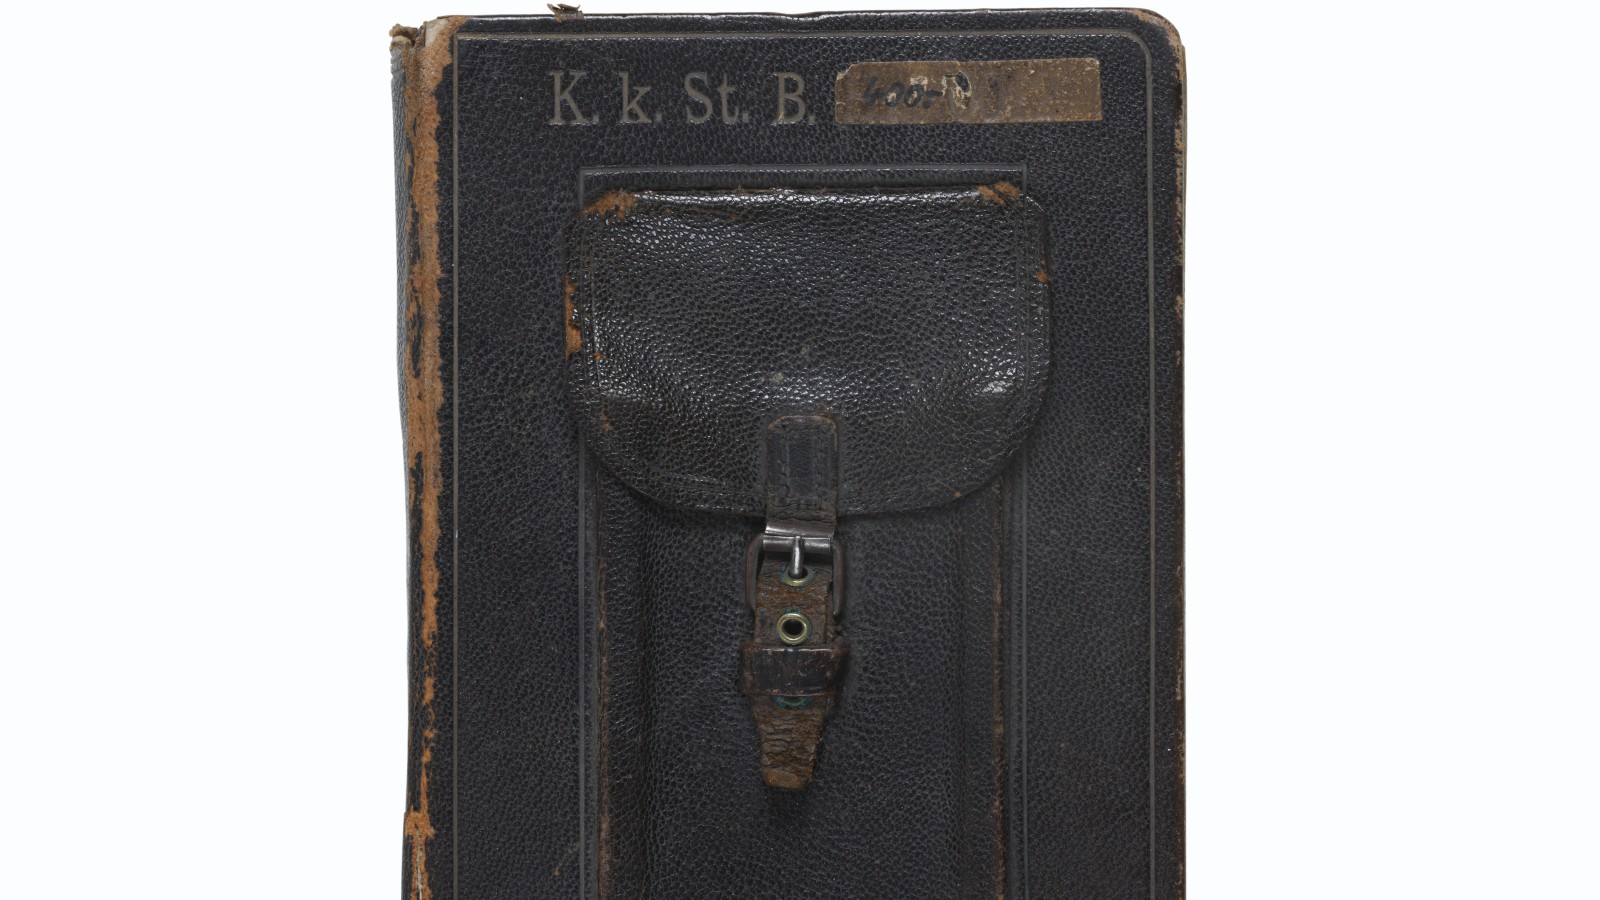 Kondukteurbuch mit händischen Eintragungen, 1914–1939